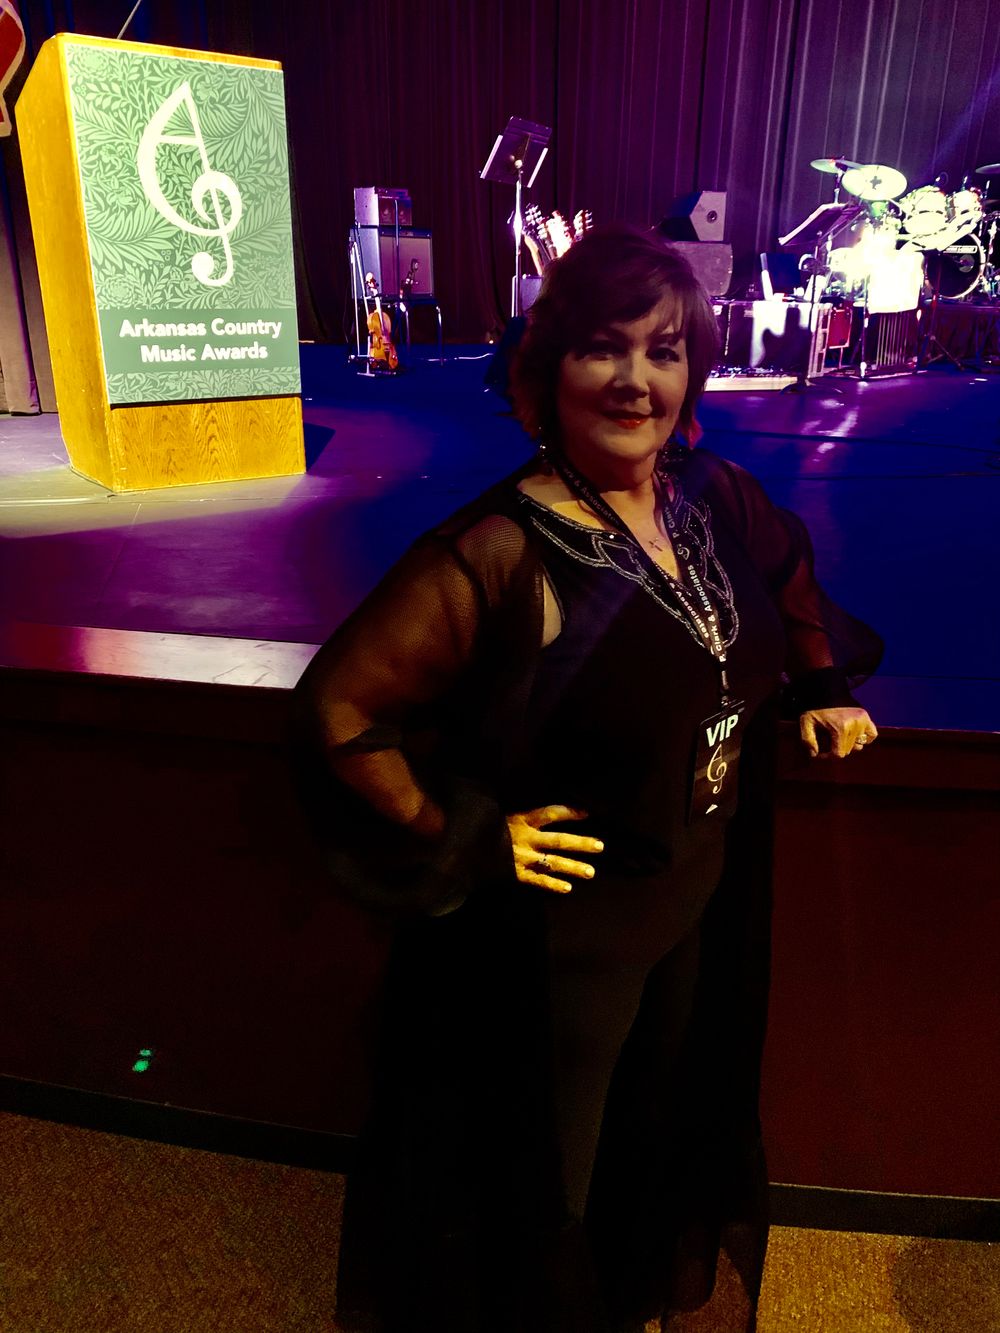 Pam Setser at the Arkansas Country Music Awards